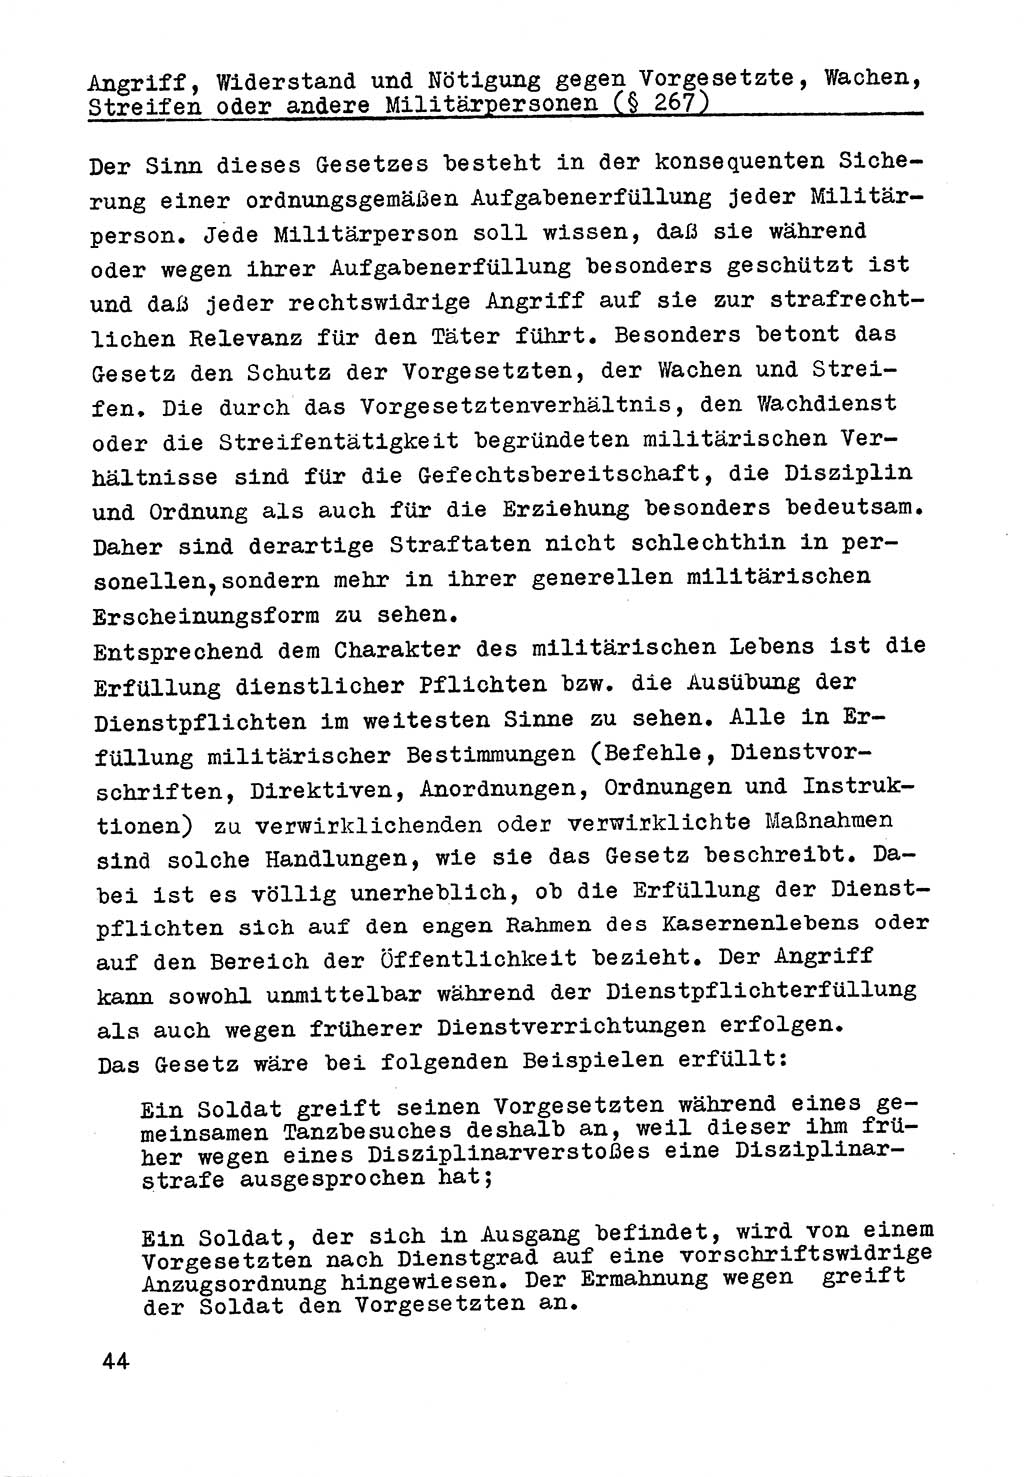 Strafrecht der DDR (Deutsche Demokratische Republik), Besonderer Teil, Lehrmaterial, Heft 9 1969, Seite 44 (Strafr. DDR BT Lehrmat. H. 9 1969, S. 44)